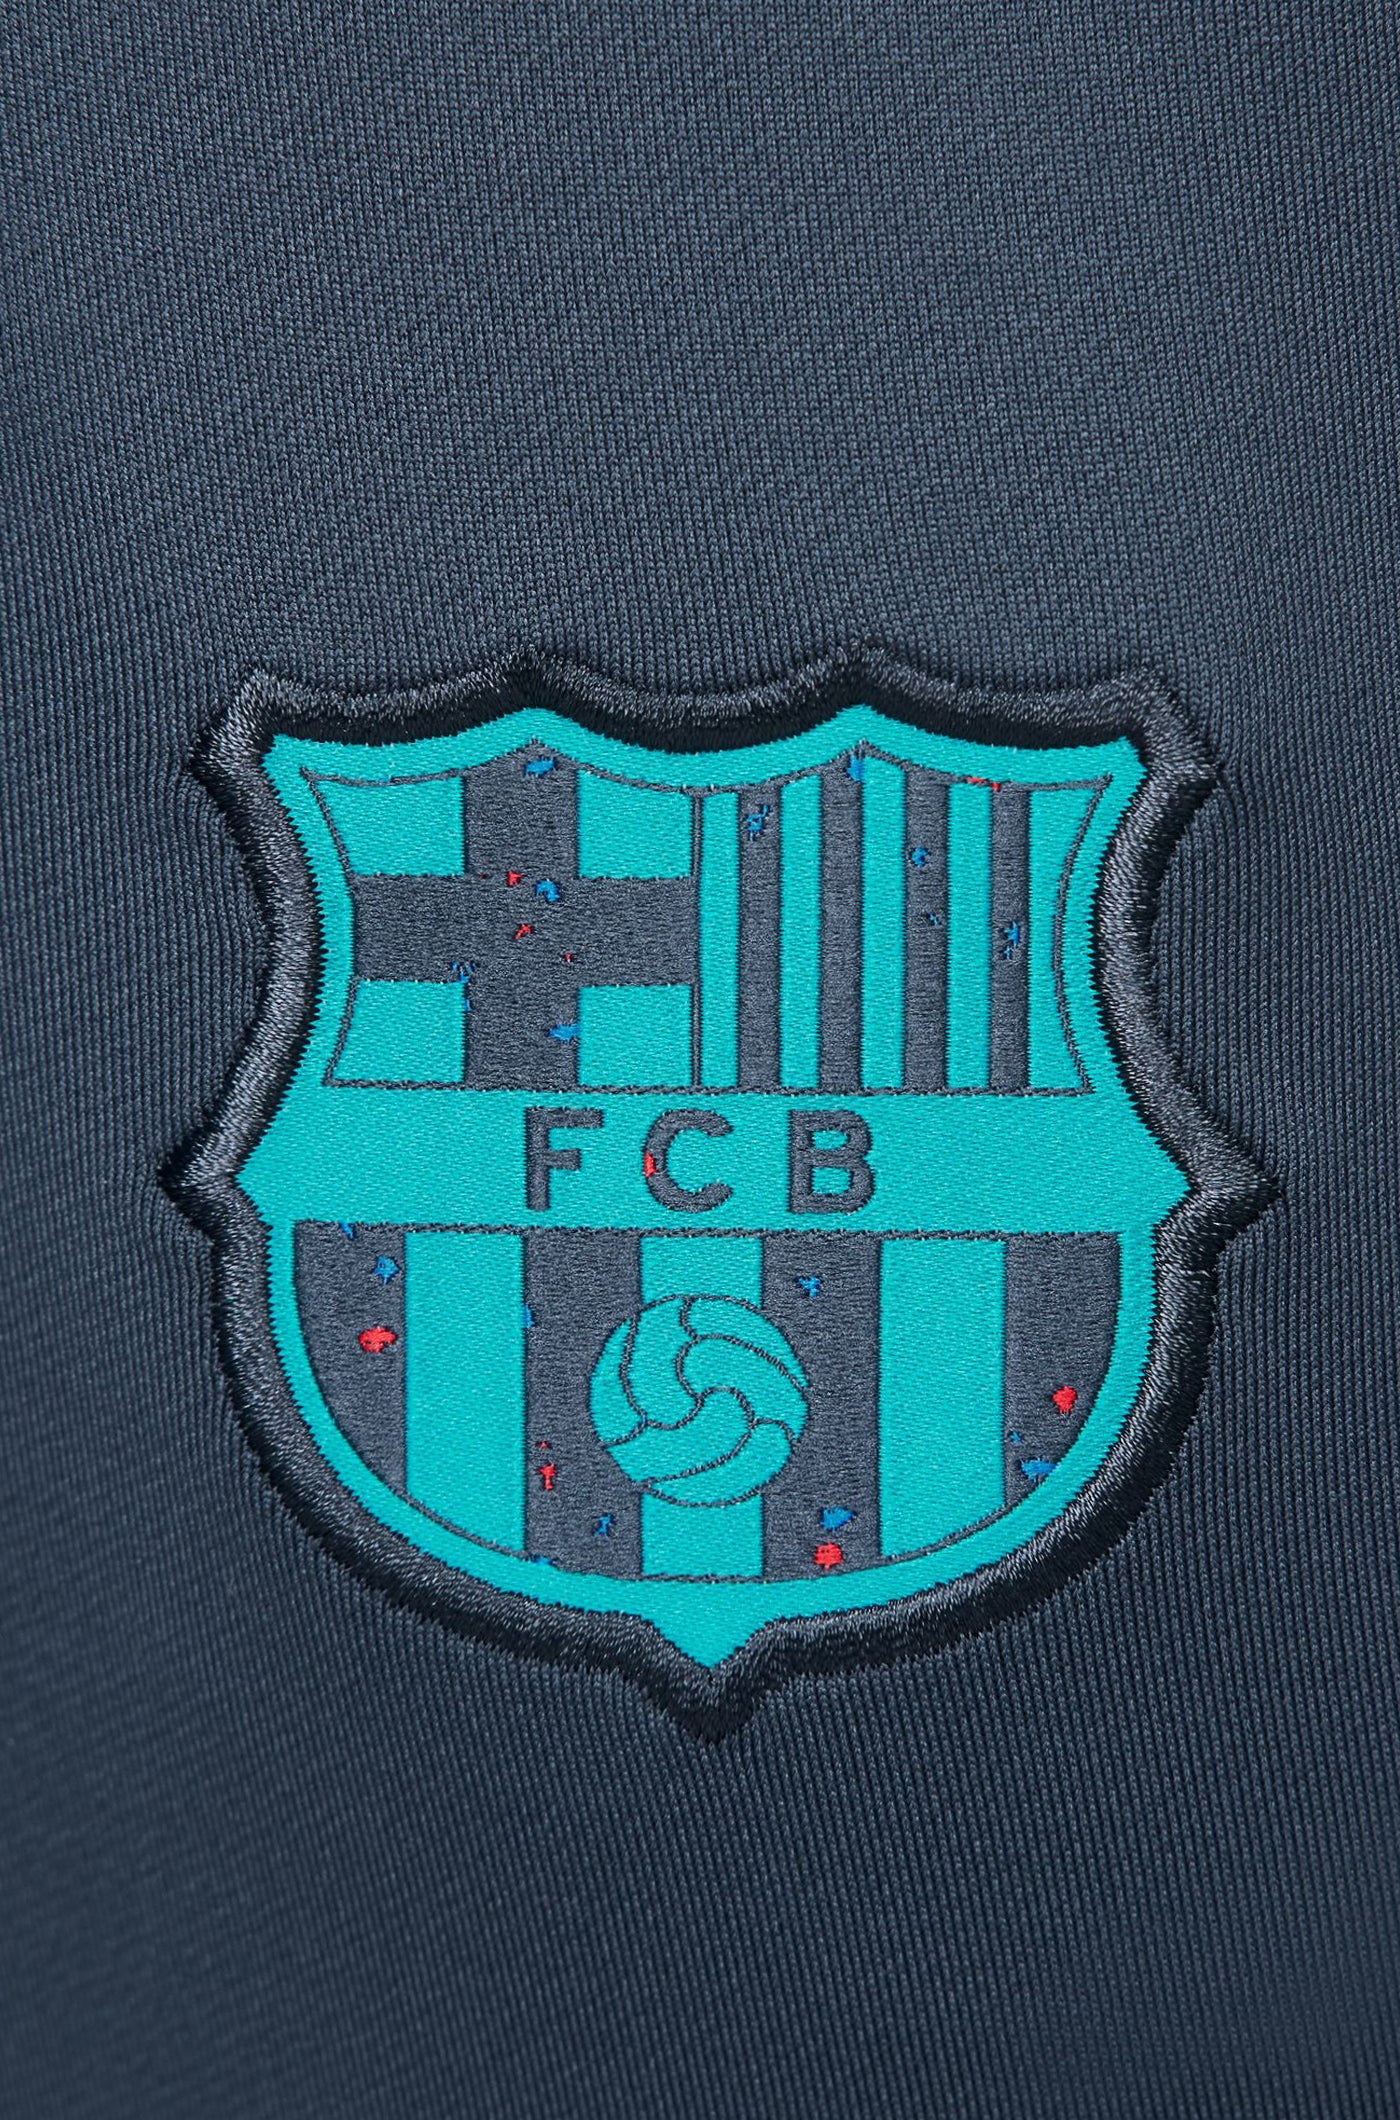 Pantalón entrenamiento FC Barcelona 23/24 - Mujer